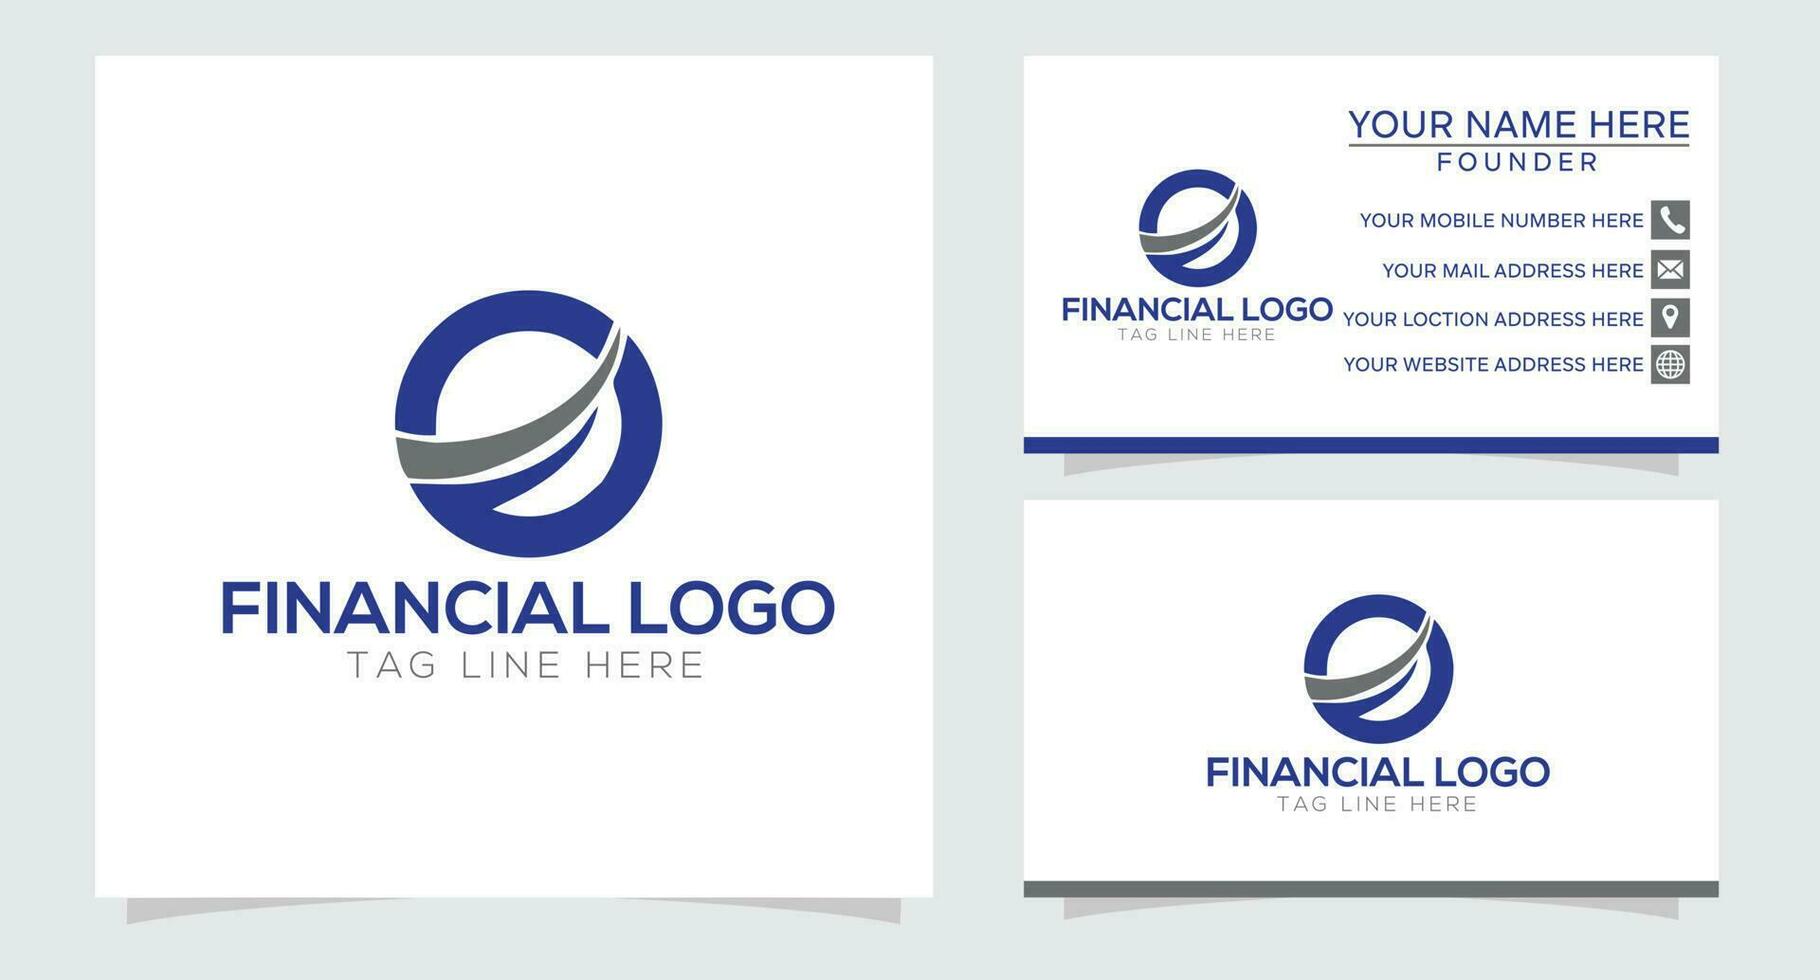 logotyp för marknadsföring och finansiell verksamhet vektor